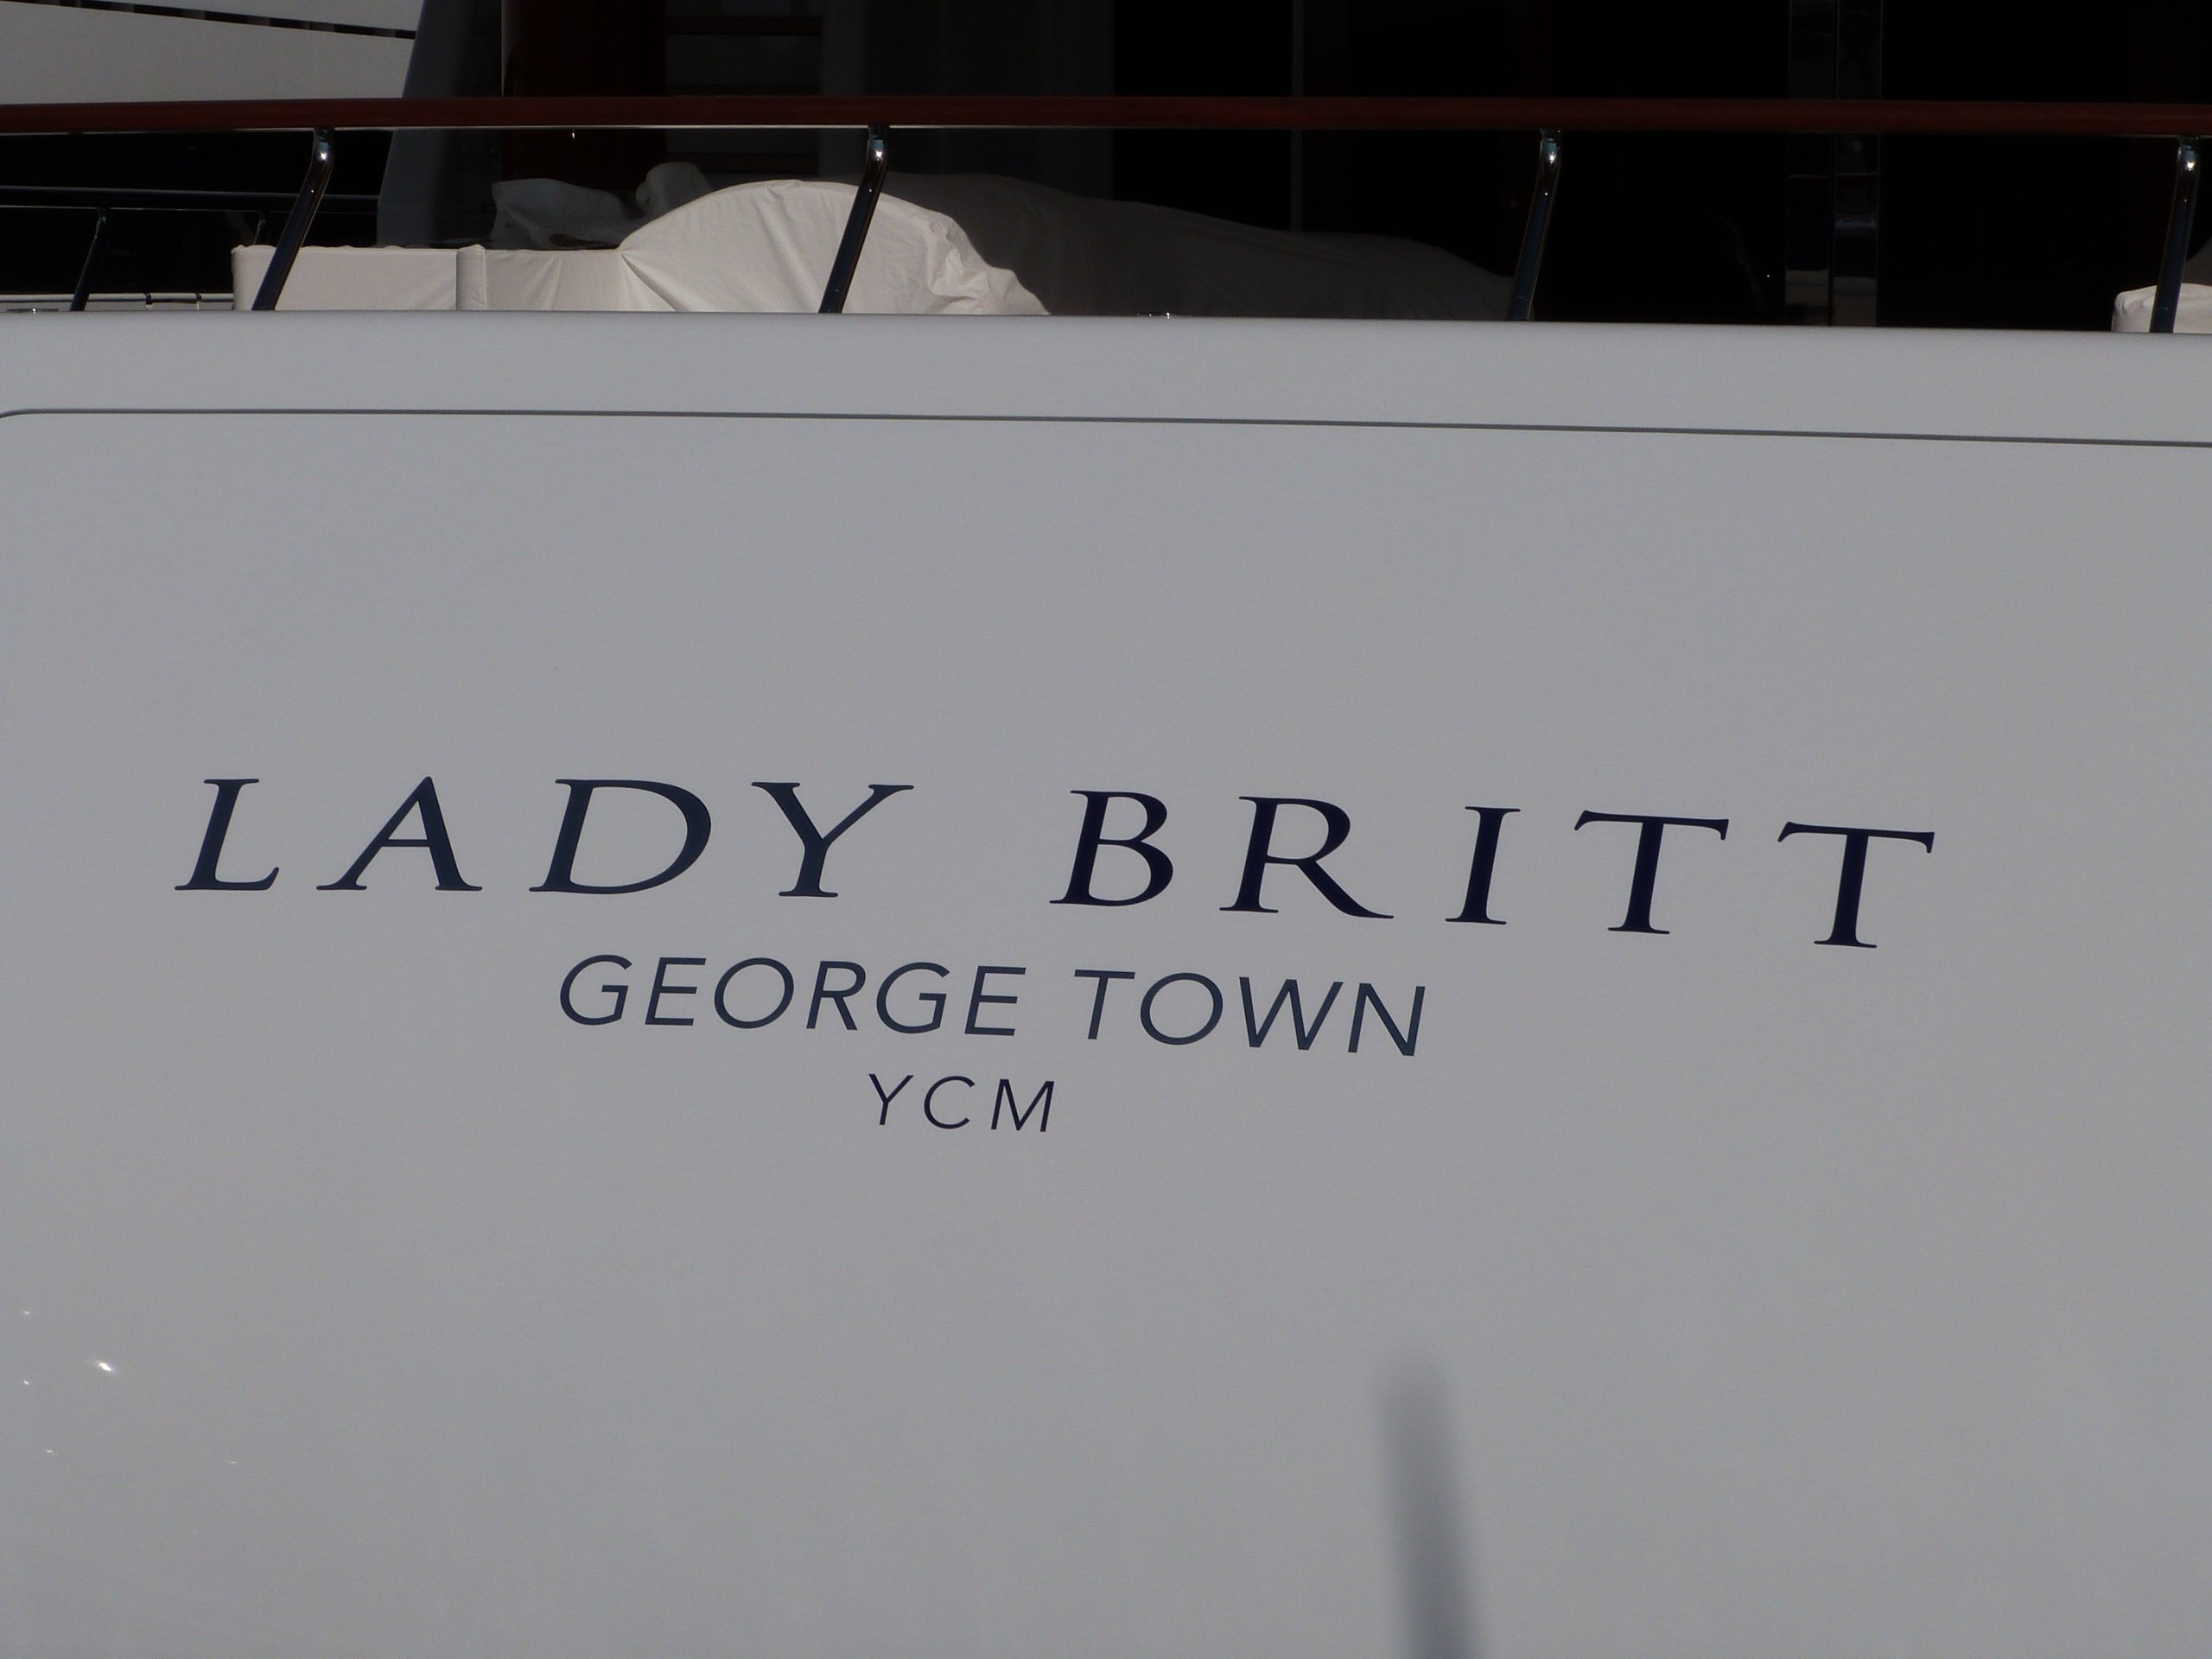 LADY BRITT Yacht • Feadship • 2011 • Proprietario Sten Warborn